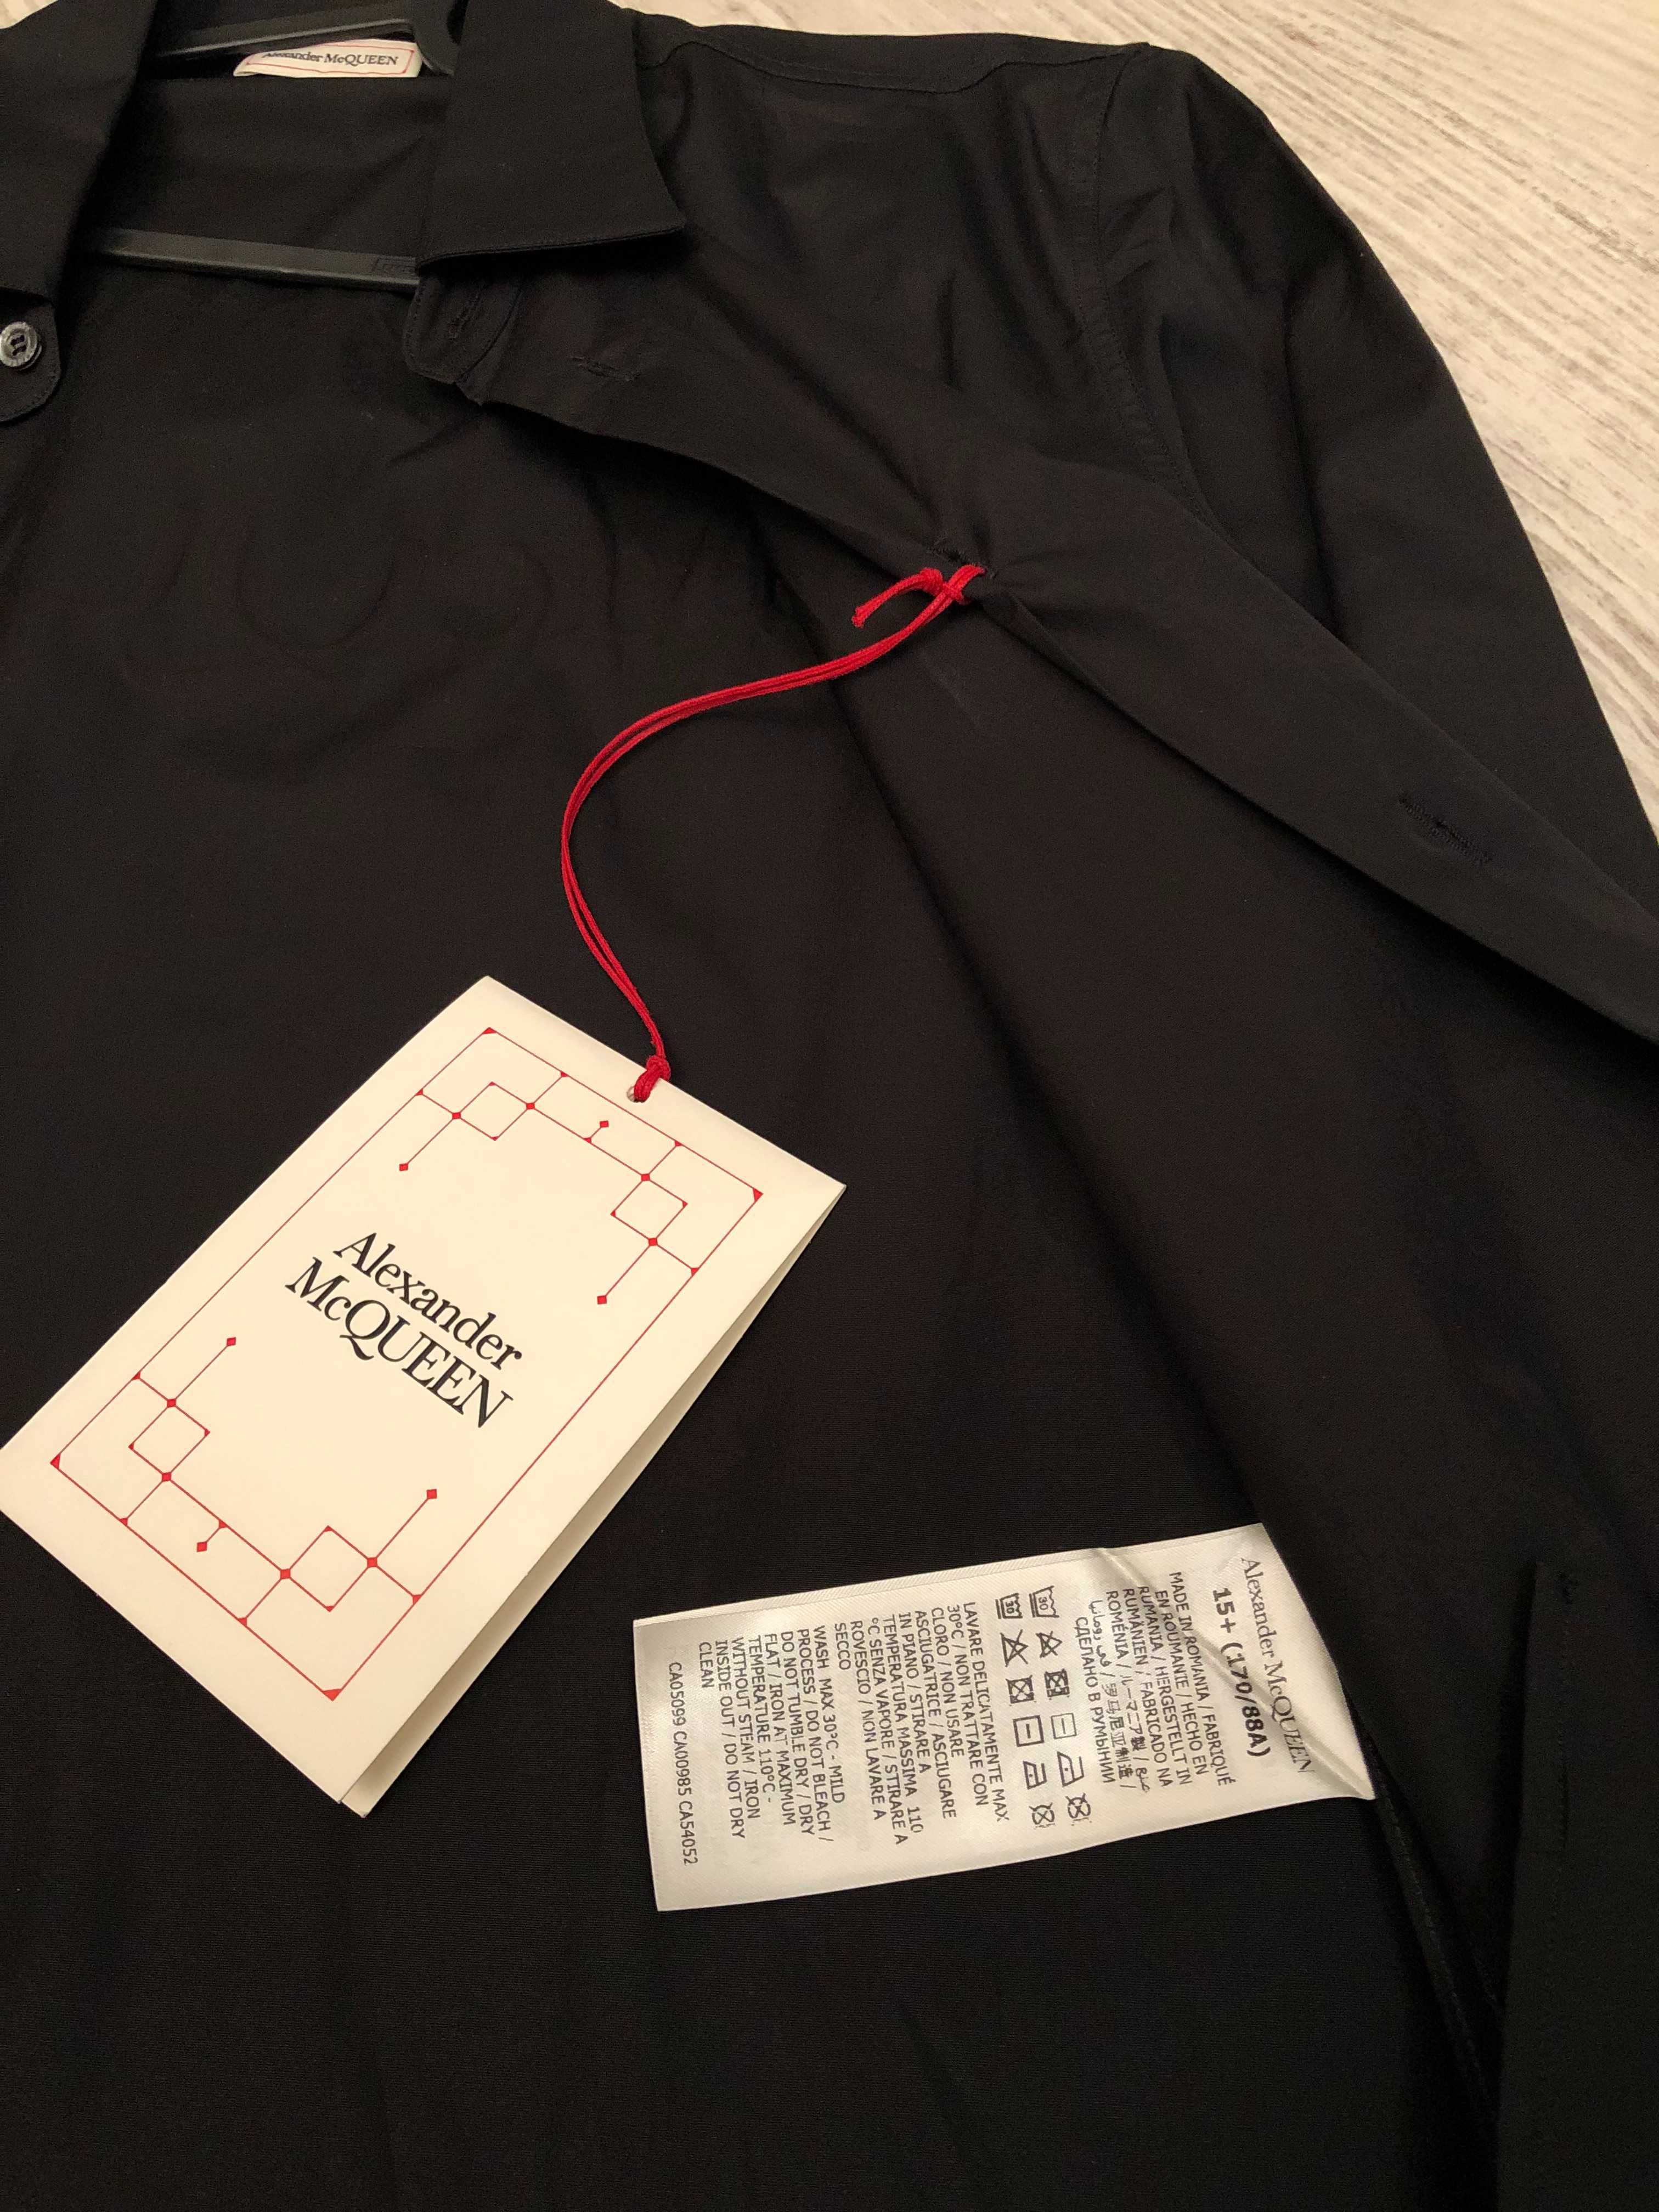 Alexander McQueen camasa S-M, originala, retail 450 euro